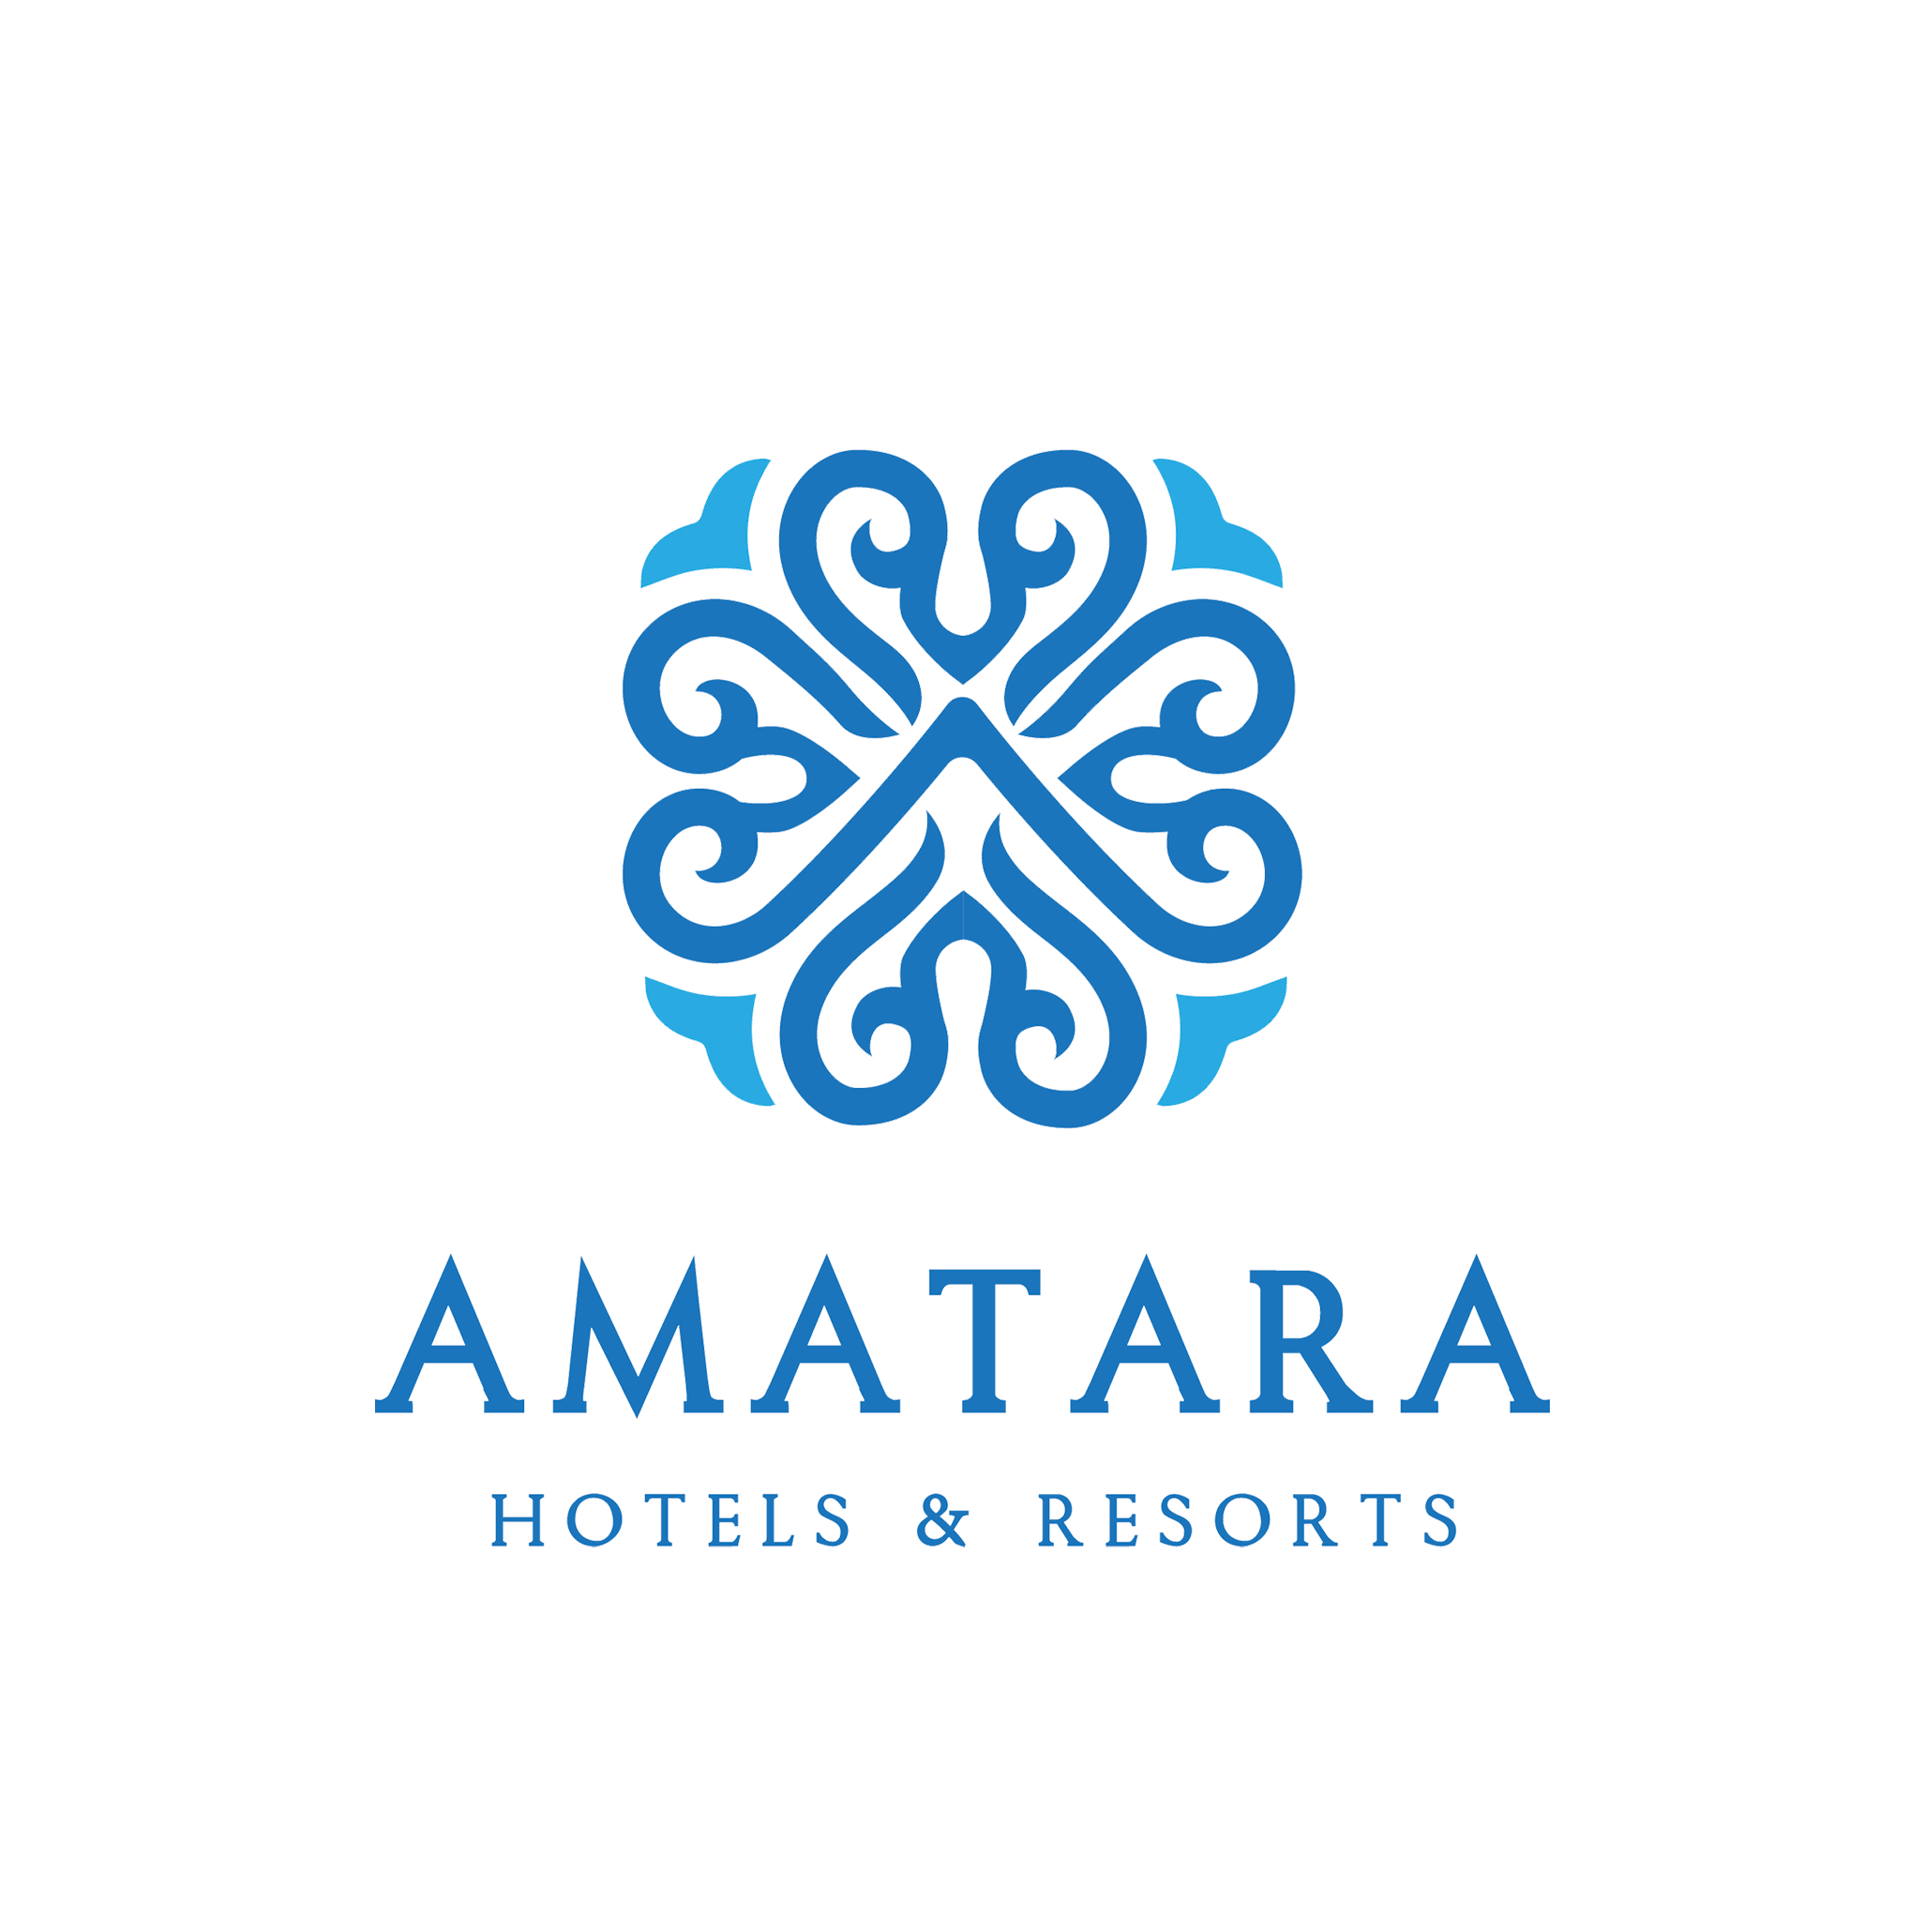 Amatara Logo